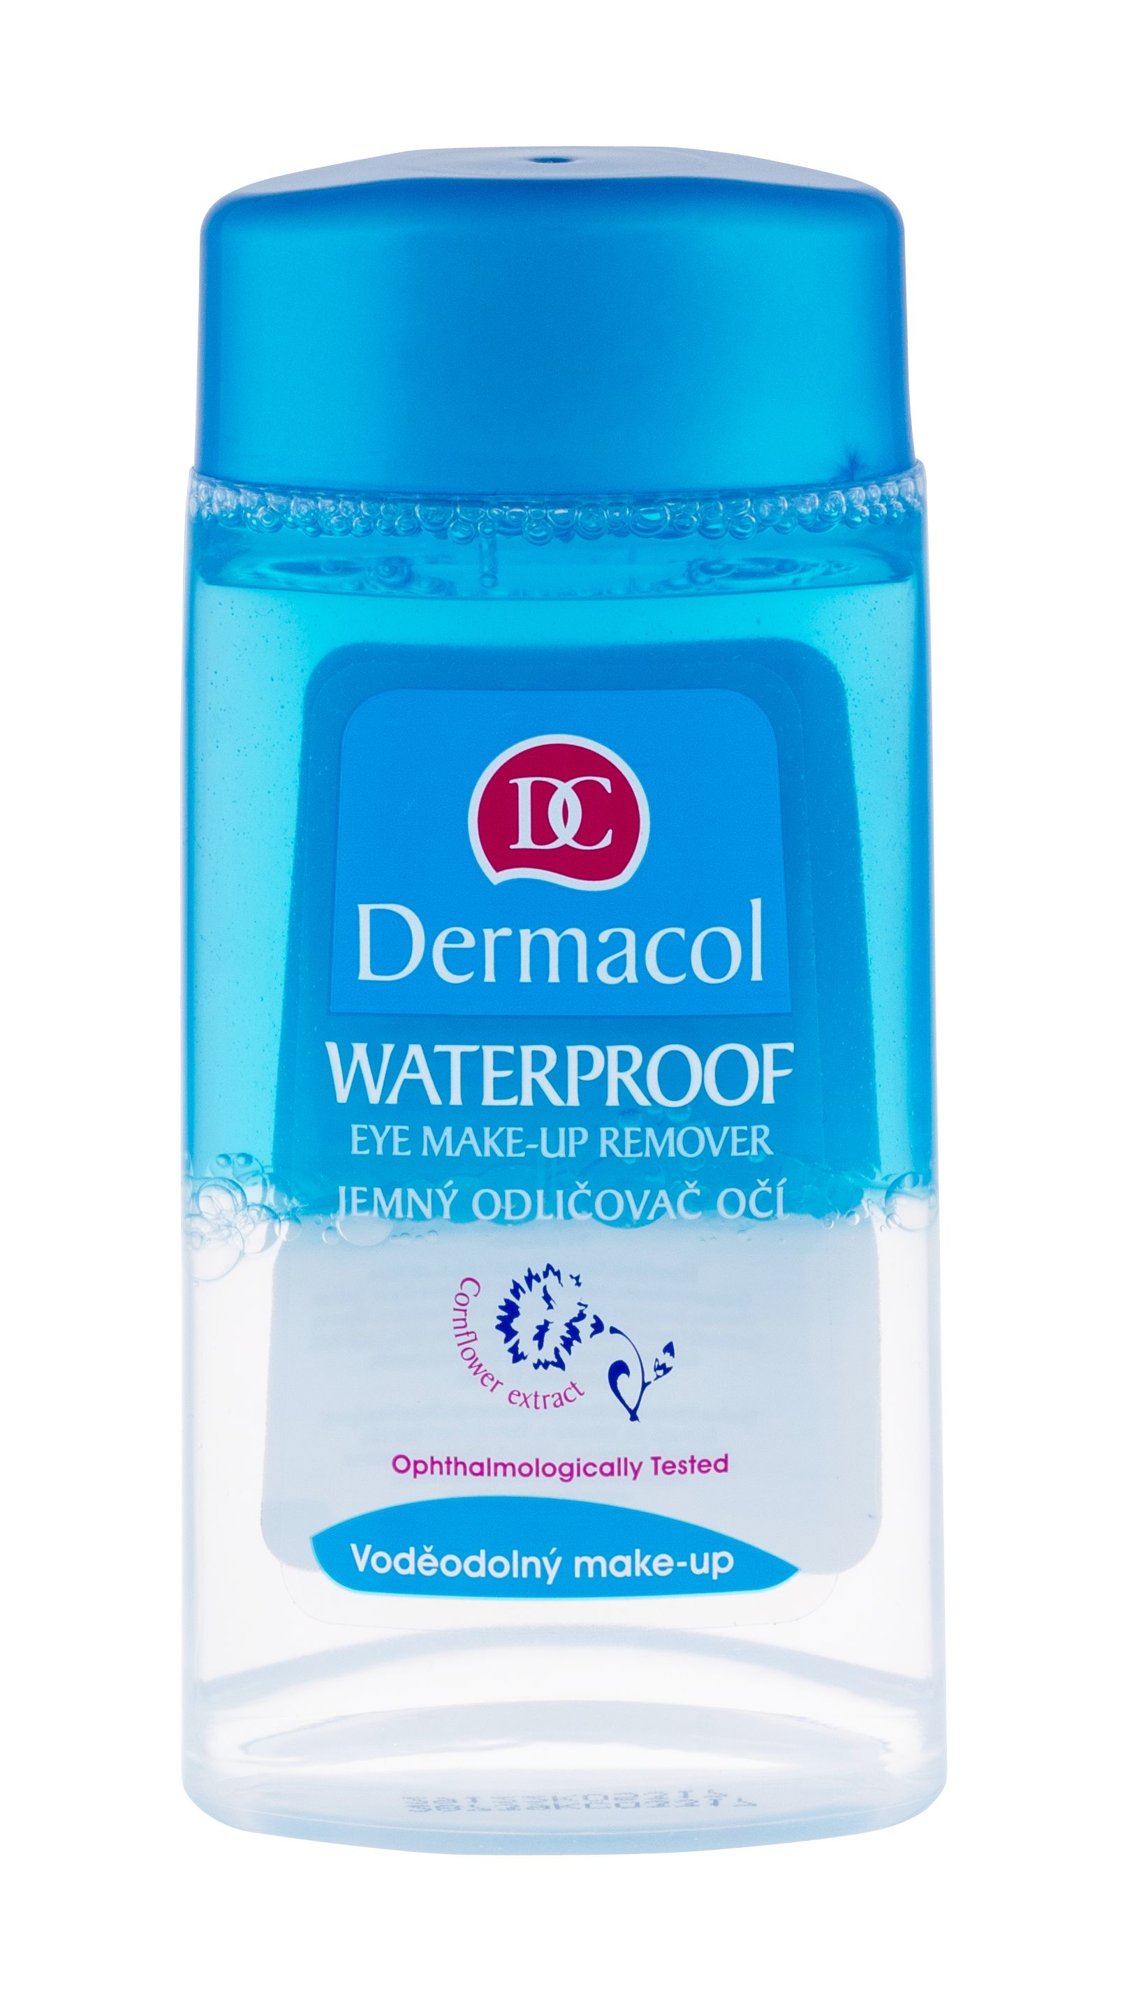 Dermacol Waterproof Eye Make-up Remover